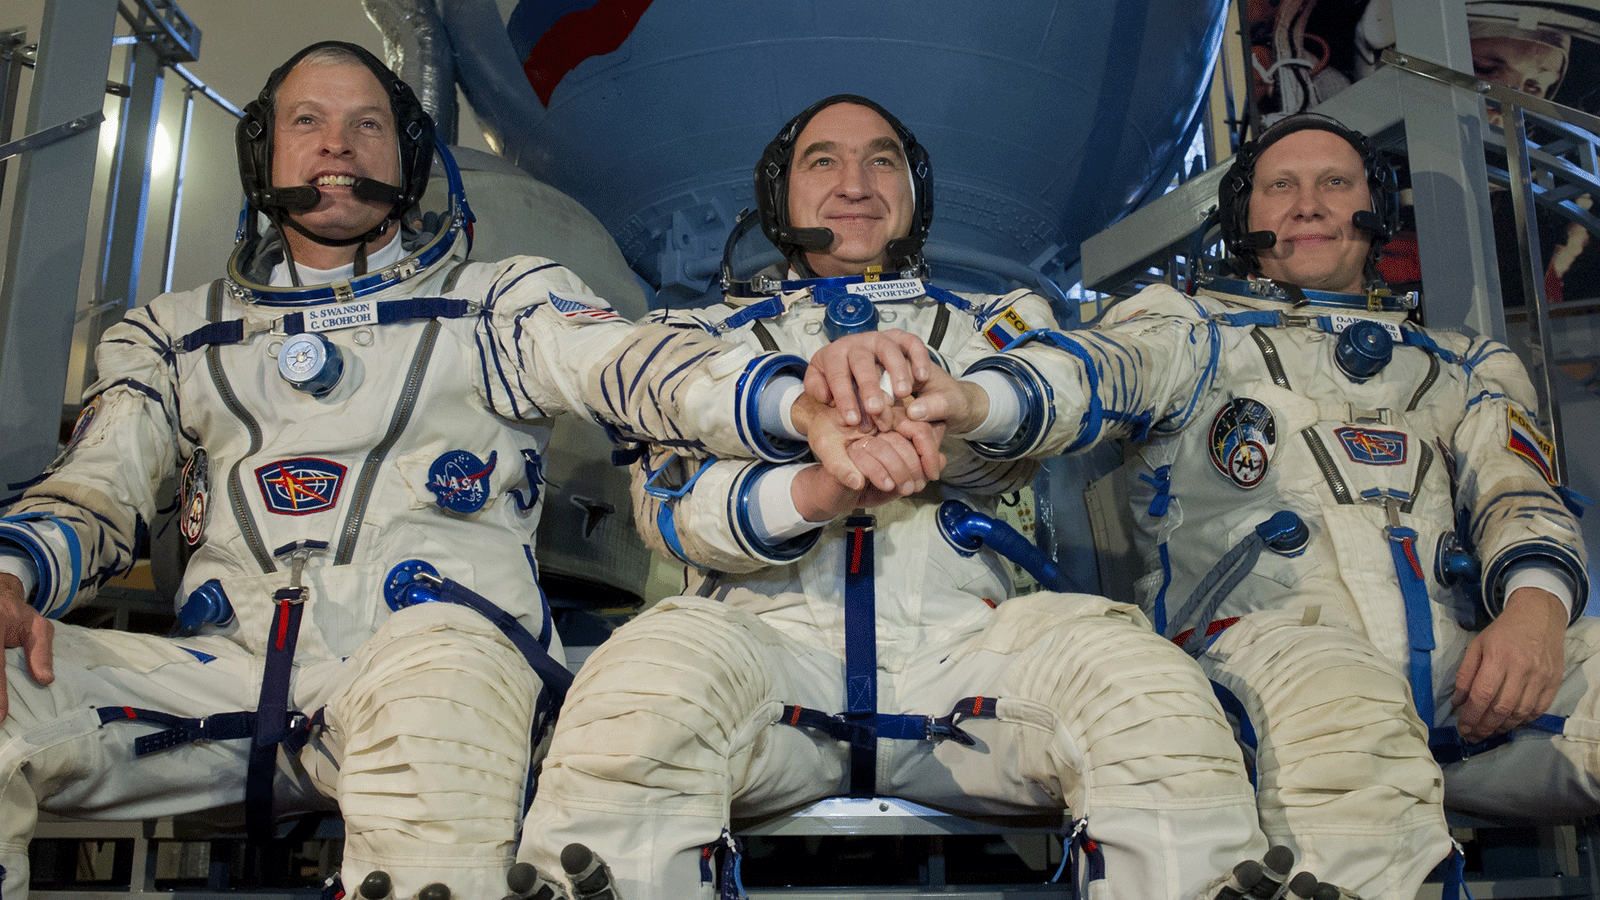 رائد فضاء ناسا ستيفن سوانسون (يسار) يتدرب مع رواد الفضاء ألكسندر سكفورتسوف (في الوسط) وأوليج أرتيمييف (يمين) قبل انطلاقهم في آذار/مارس 2014 إلى المحطة الفضائية